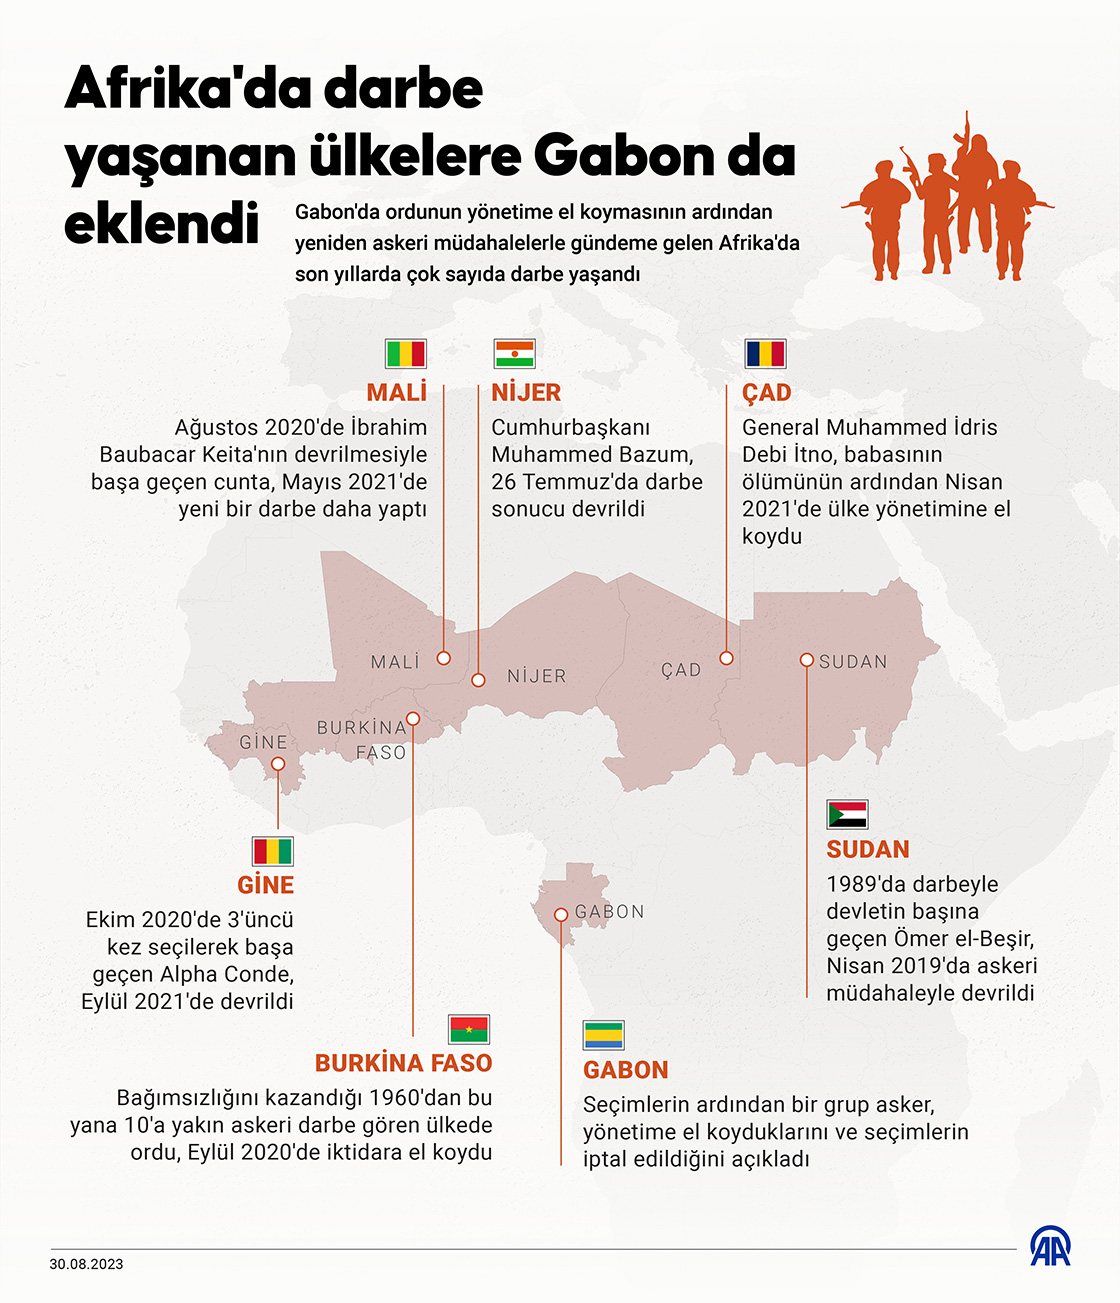 Afrika'da darbe yaşanan ülkelere Gabon da eklendi